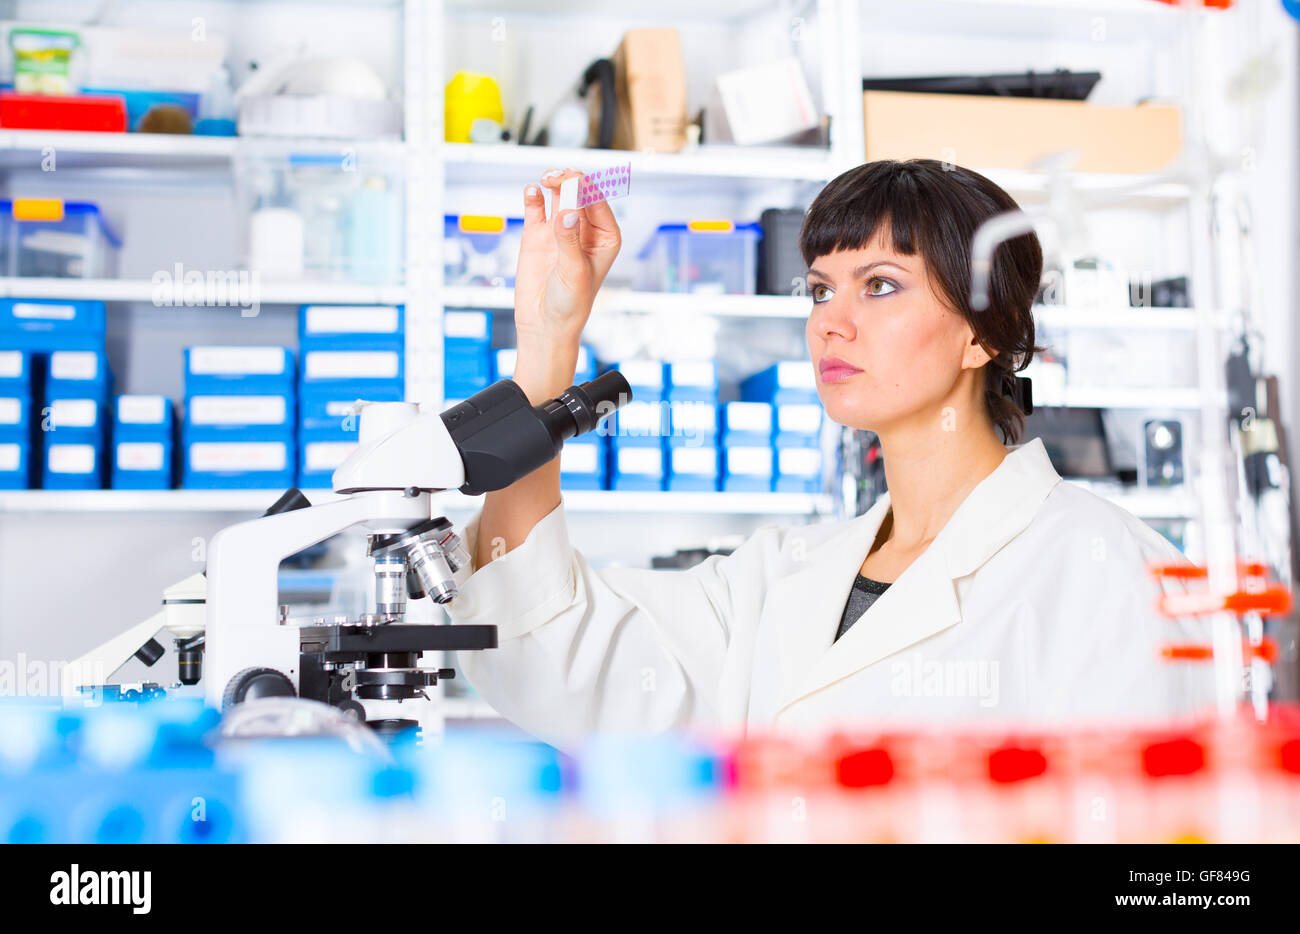 Frau in einem Labor-Mikroskop mit Mikroskop schieben in der hand Stockfoto